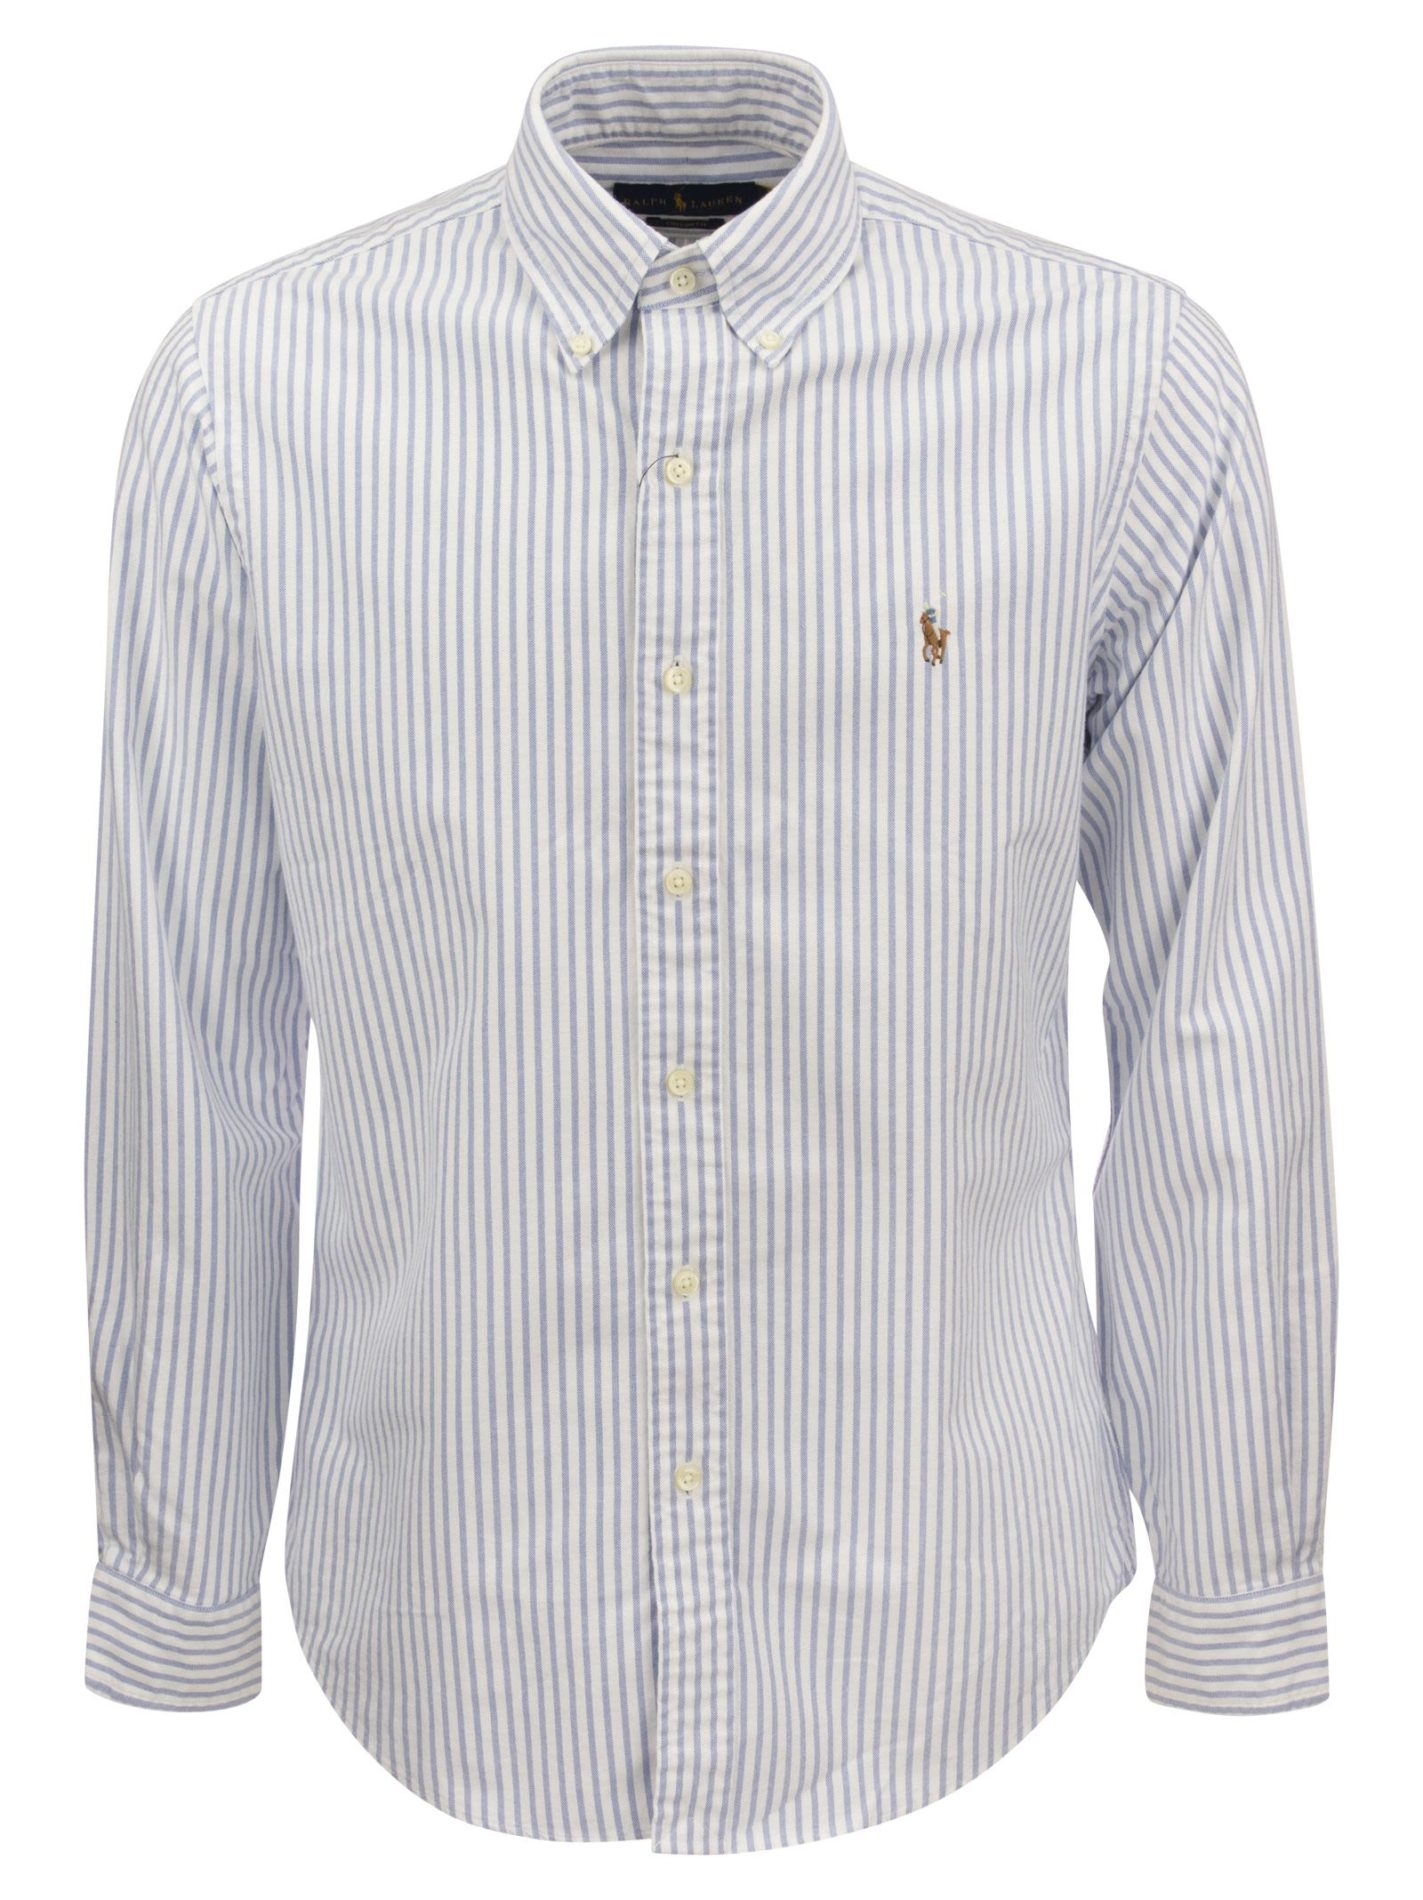 Custom-Fit Striped Oxford Shirt - Bellettini.com